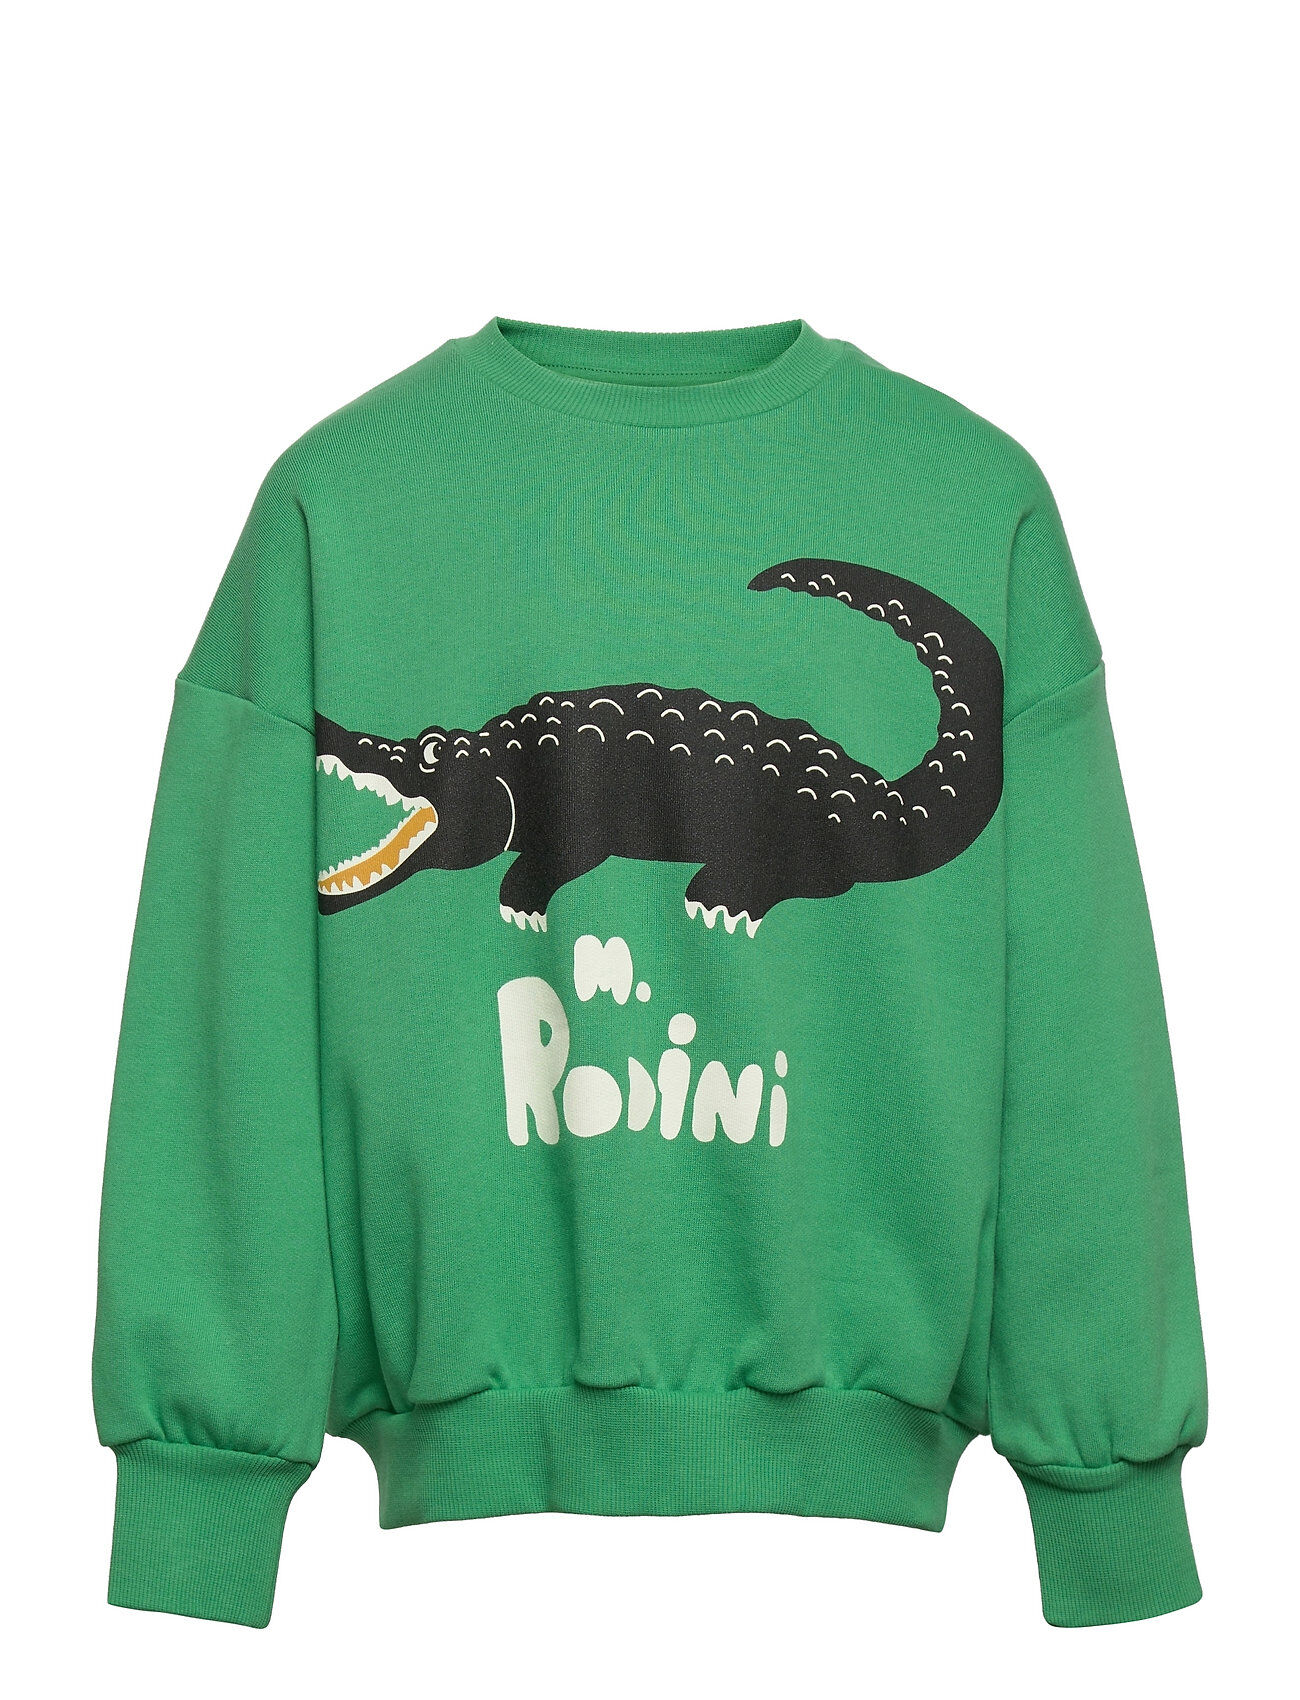 Mini Rodini Crocodile Sp Sweatshirt Sweat-shirt Genser Grønn Mini Rodini